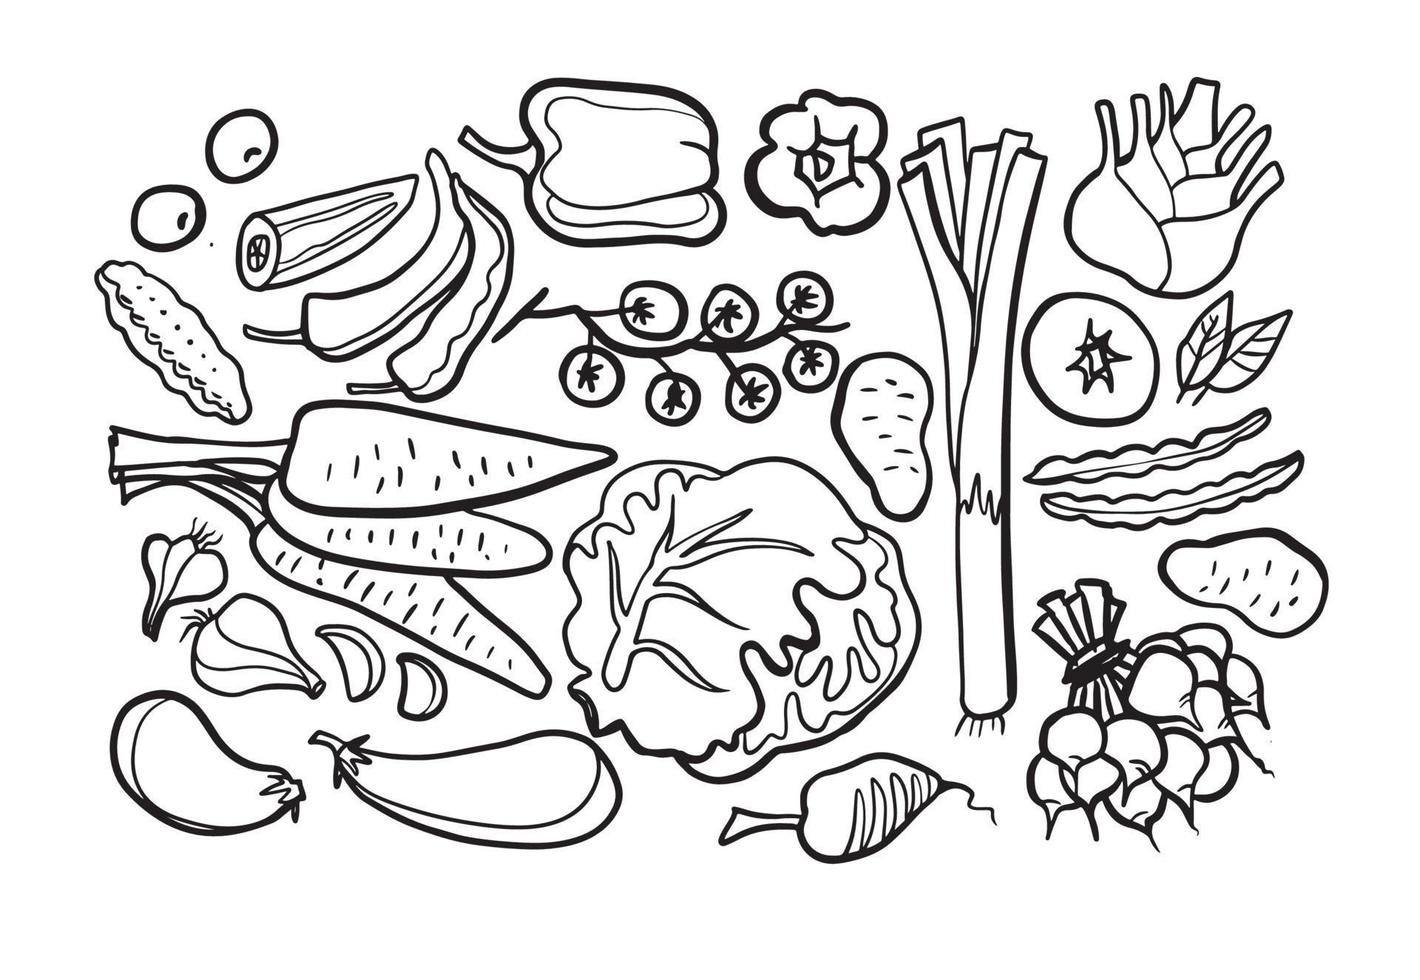 groenten doodle tekening collectie. groente zoals wortel, maïs, gember, komkommer, kool, aardappel, enz. Hand getrokken doodle vectorillustraties in zwart geïsoleerd op witte achtergrond. vector